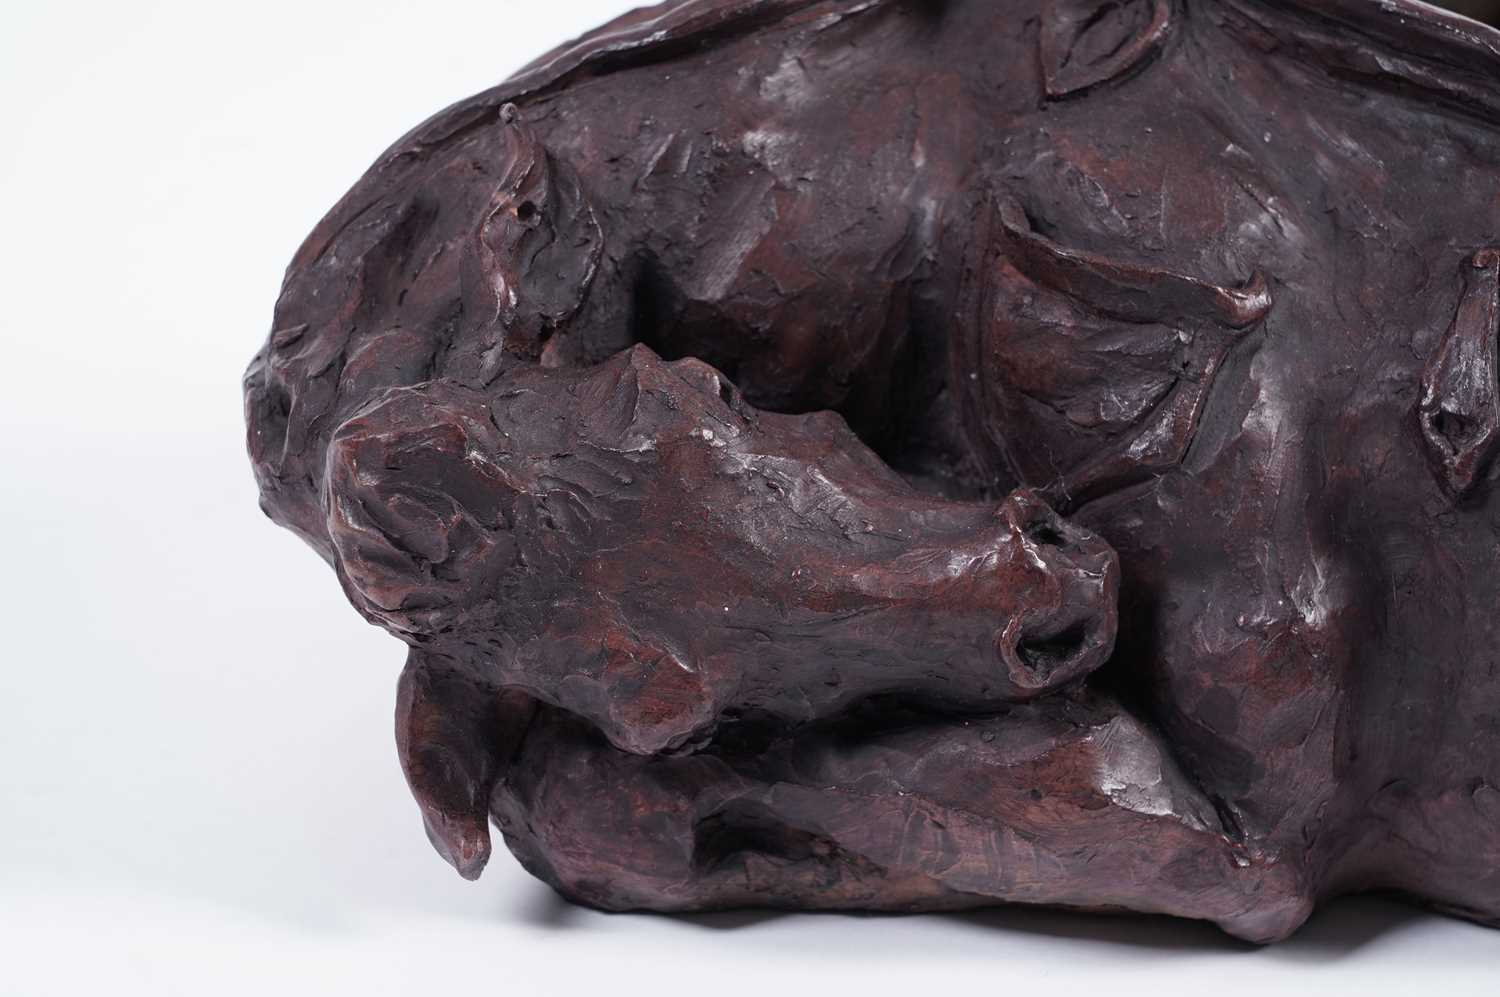 Lisa Delarny - Cowskin Handbag | clay sculpture - Image 7 of 8